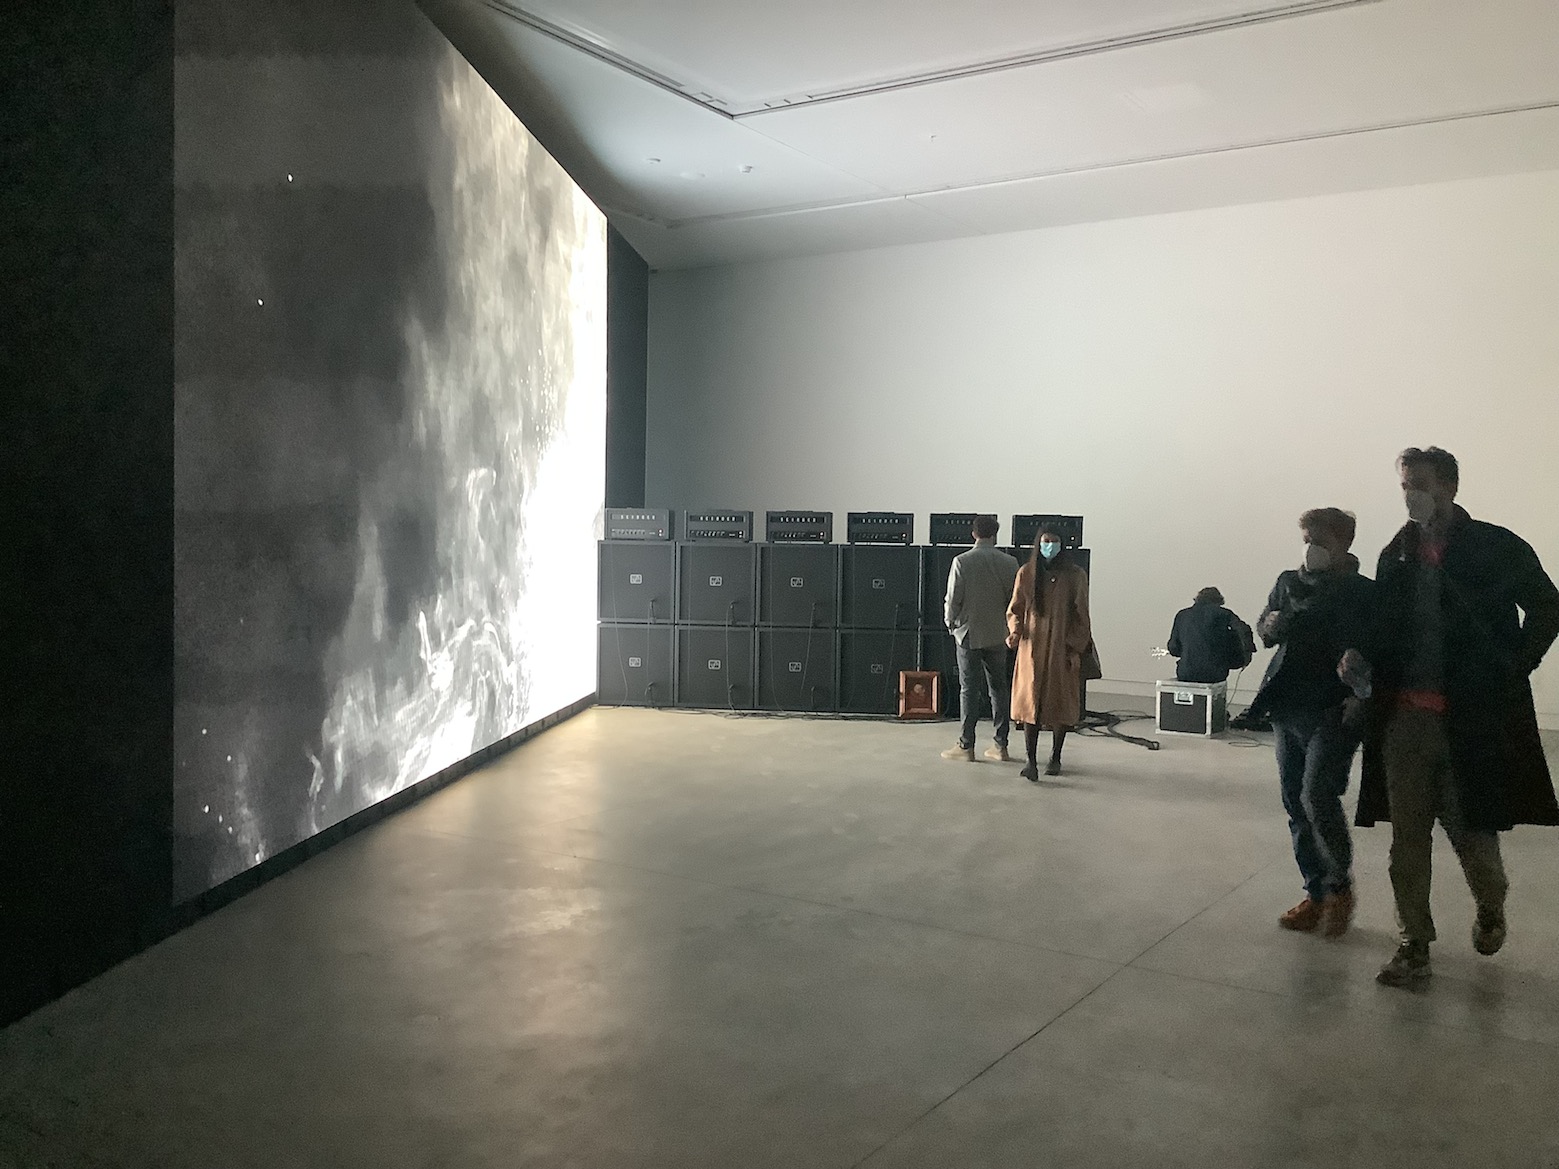 Alemani 0 – Padiglioni nazionali 1. Sulla Biennale di Venezia delle sorprese